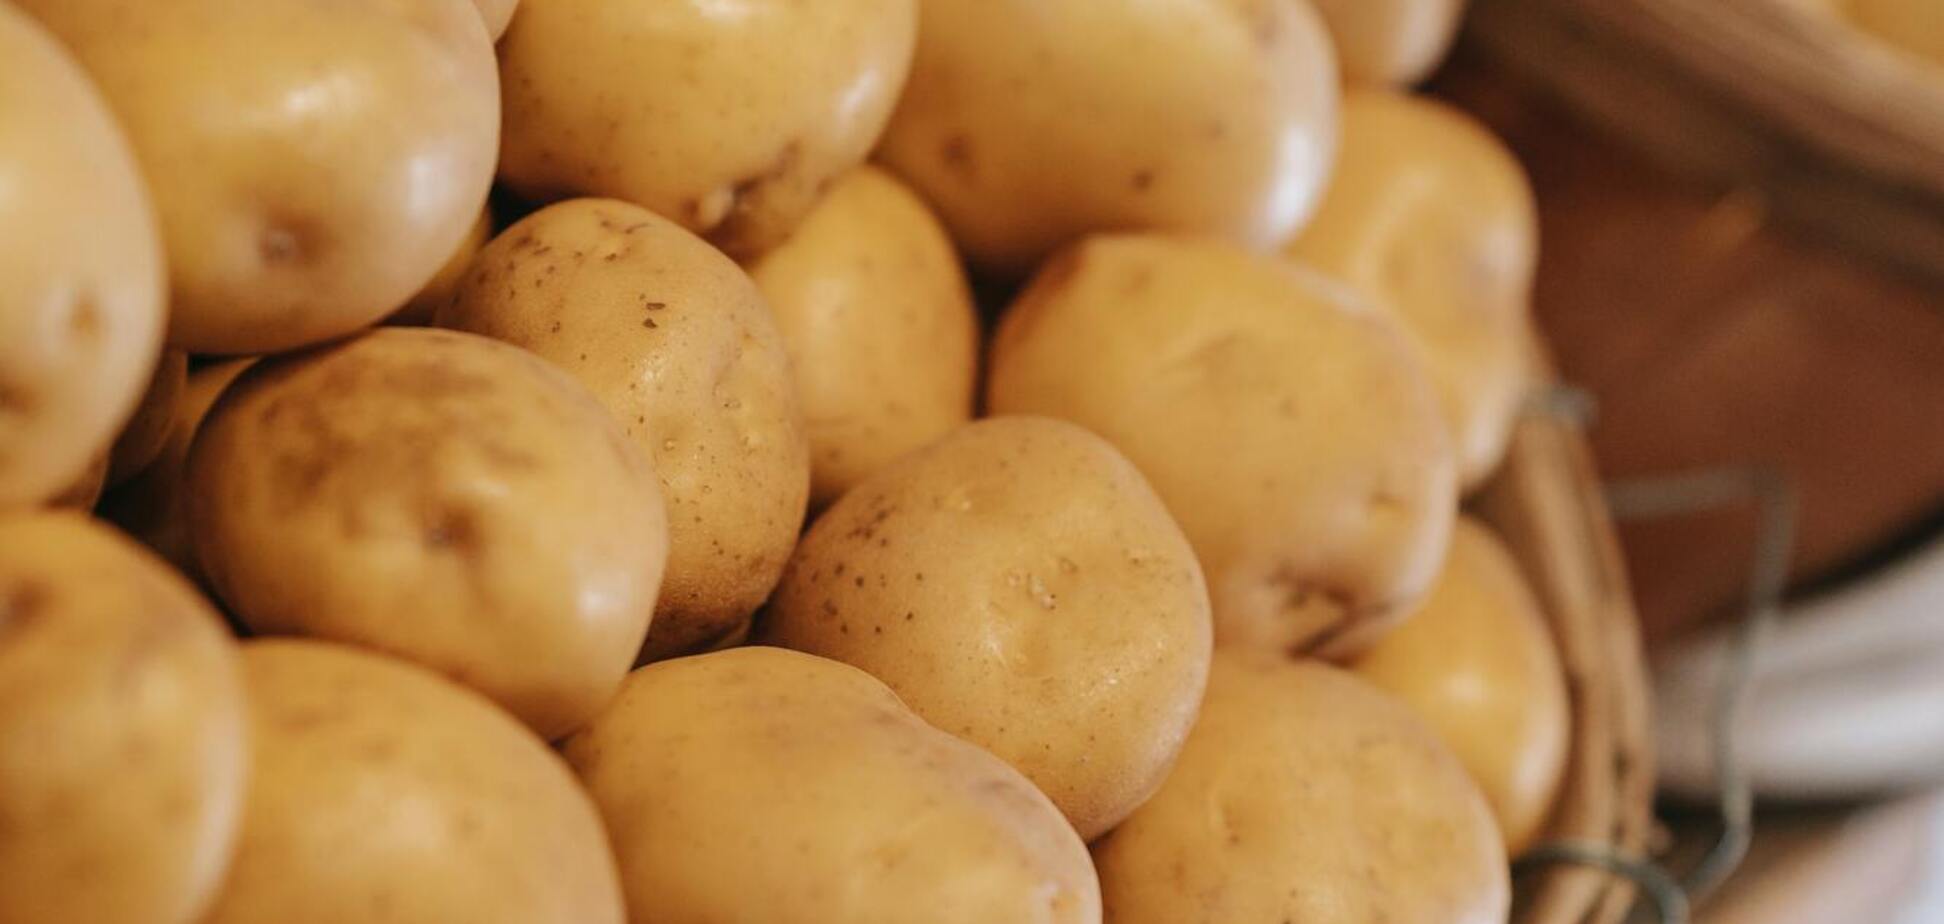 Цены на картофель в Украине вырастут весной